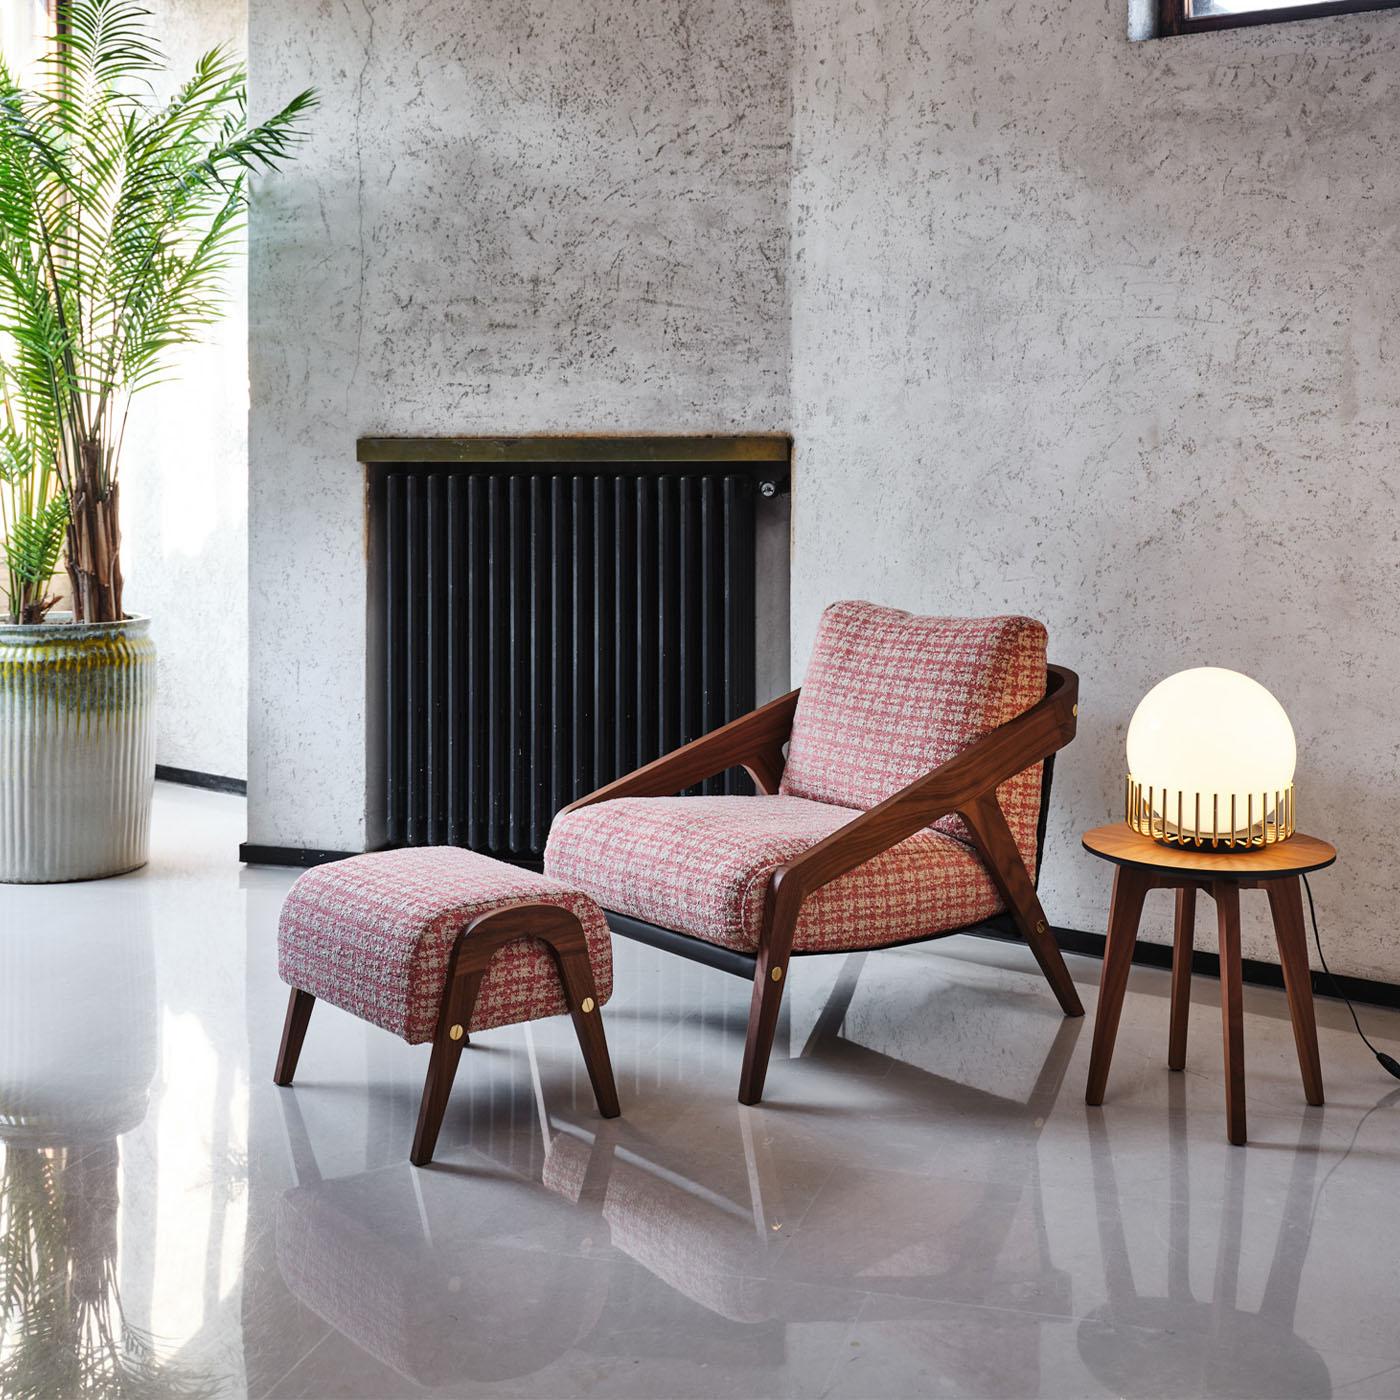 Dieser Sessel vereint die Persönlichkeit des Vintage-Stils mit der zeitlosen Anziehungskraft einer robusten Struktur aus Canaletto-Nussbaum. Das Gestell mit seinen dynamischen, abgeschrägten Profilen ist unter der Sitzfläche und an der Rückenlehne